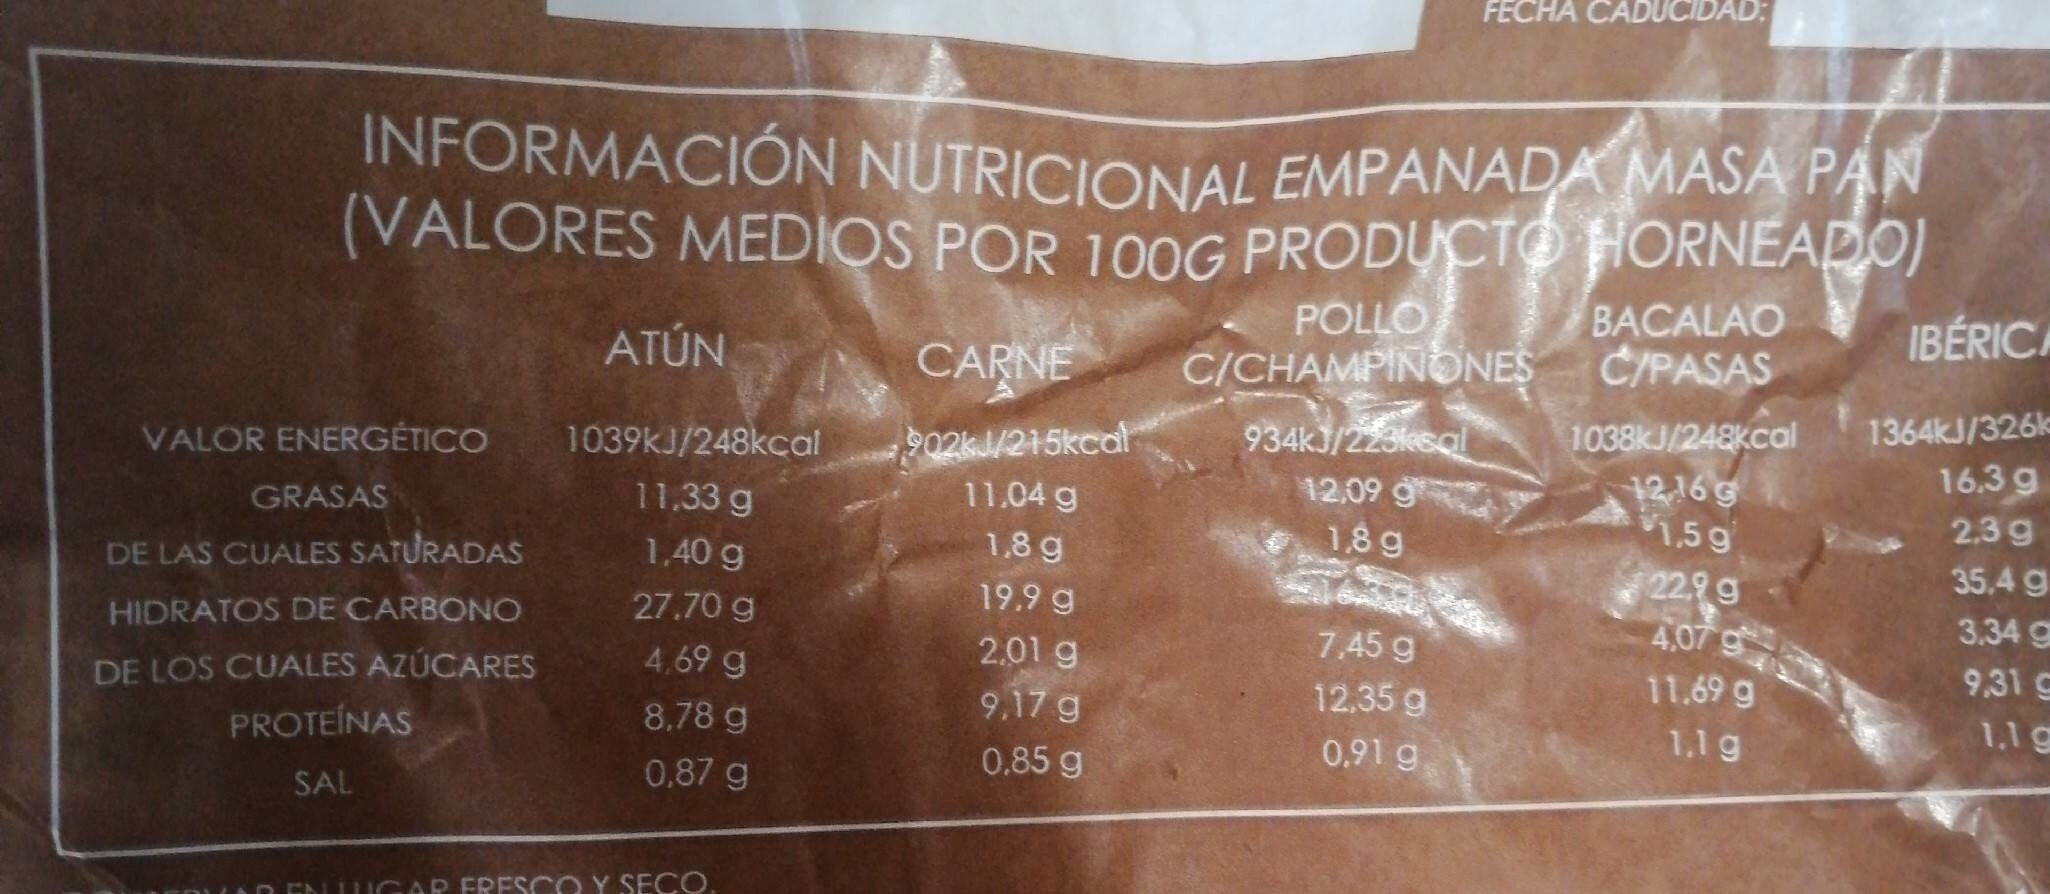 Empanada de pollo - Nutrition facts - es